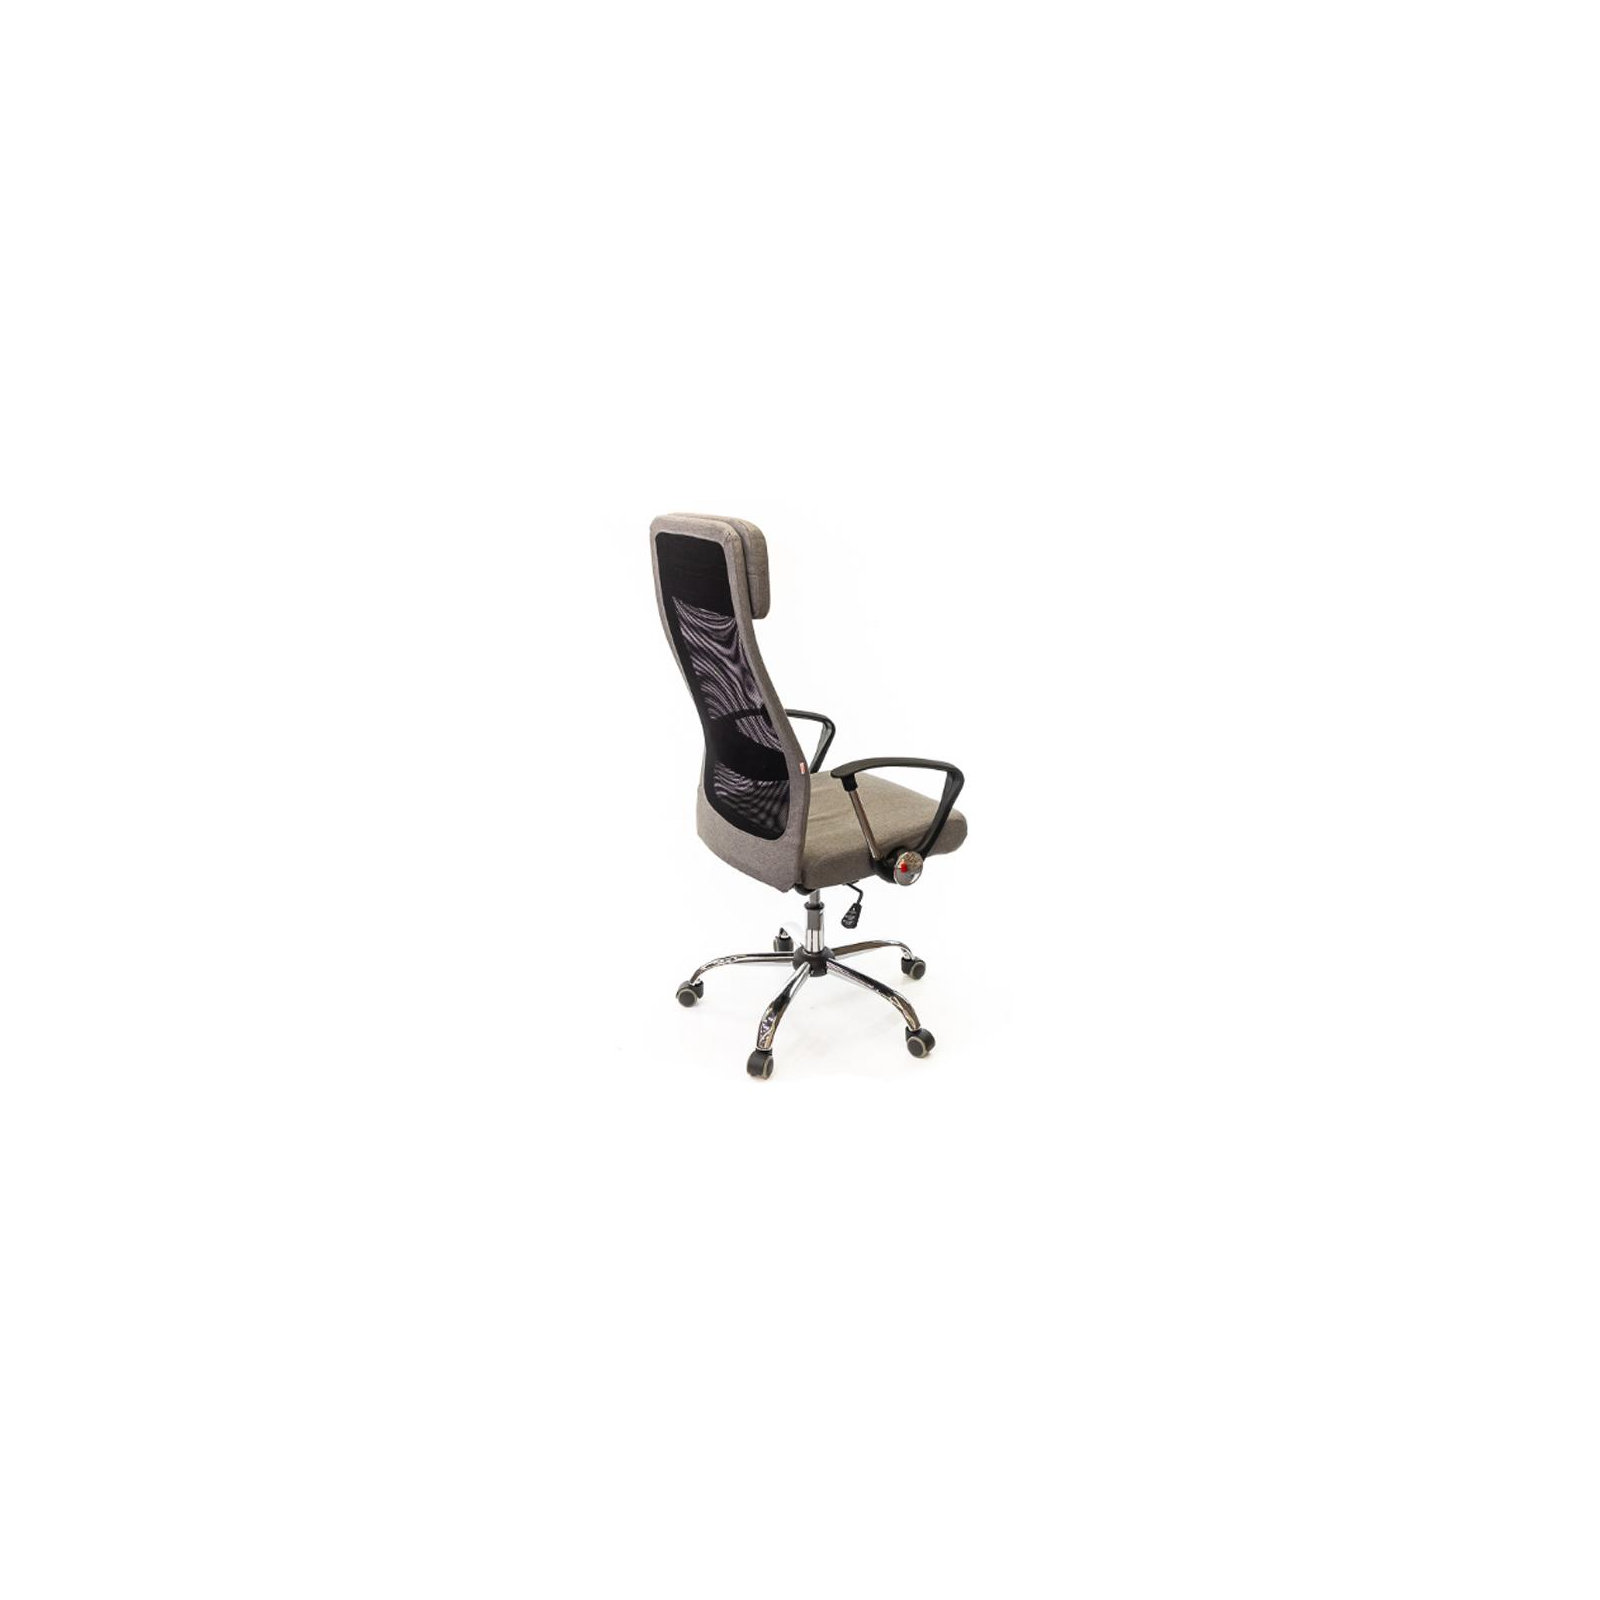 Офисное кресло Аклас Гилмор FX CH TILT Серое (10920) изображение 5